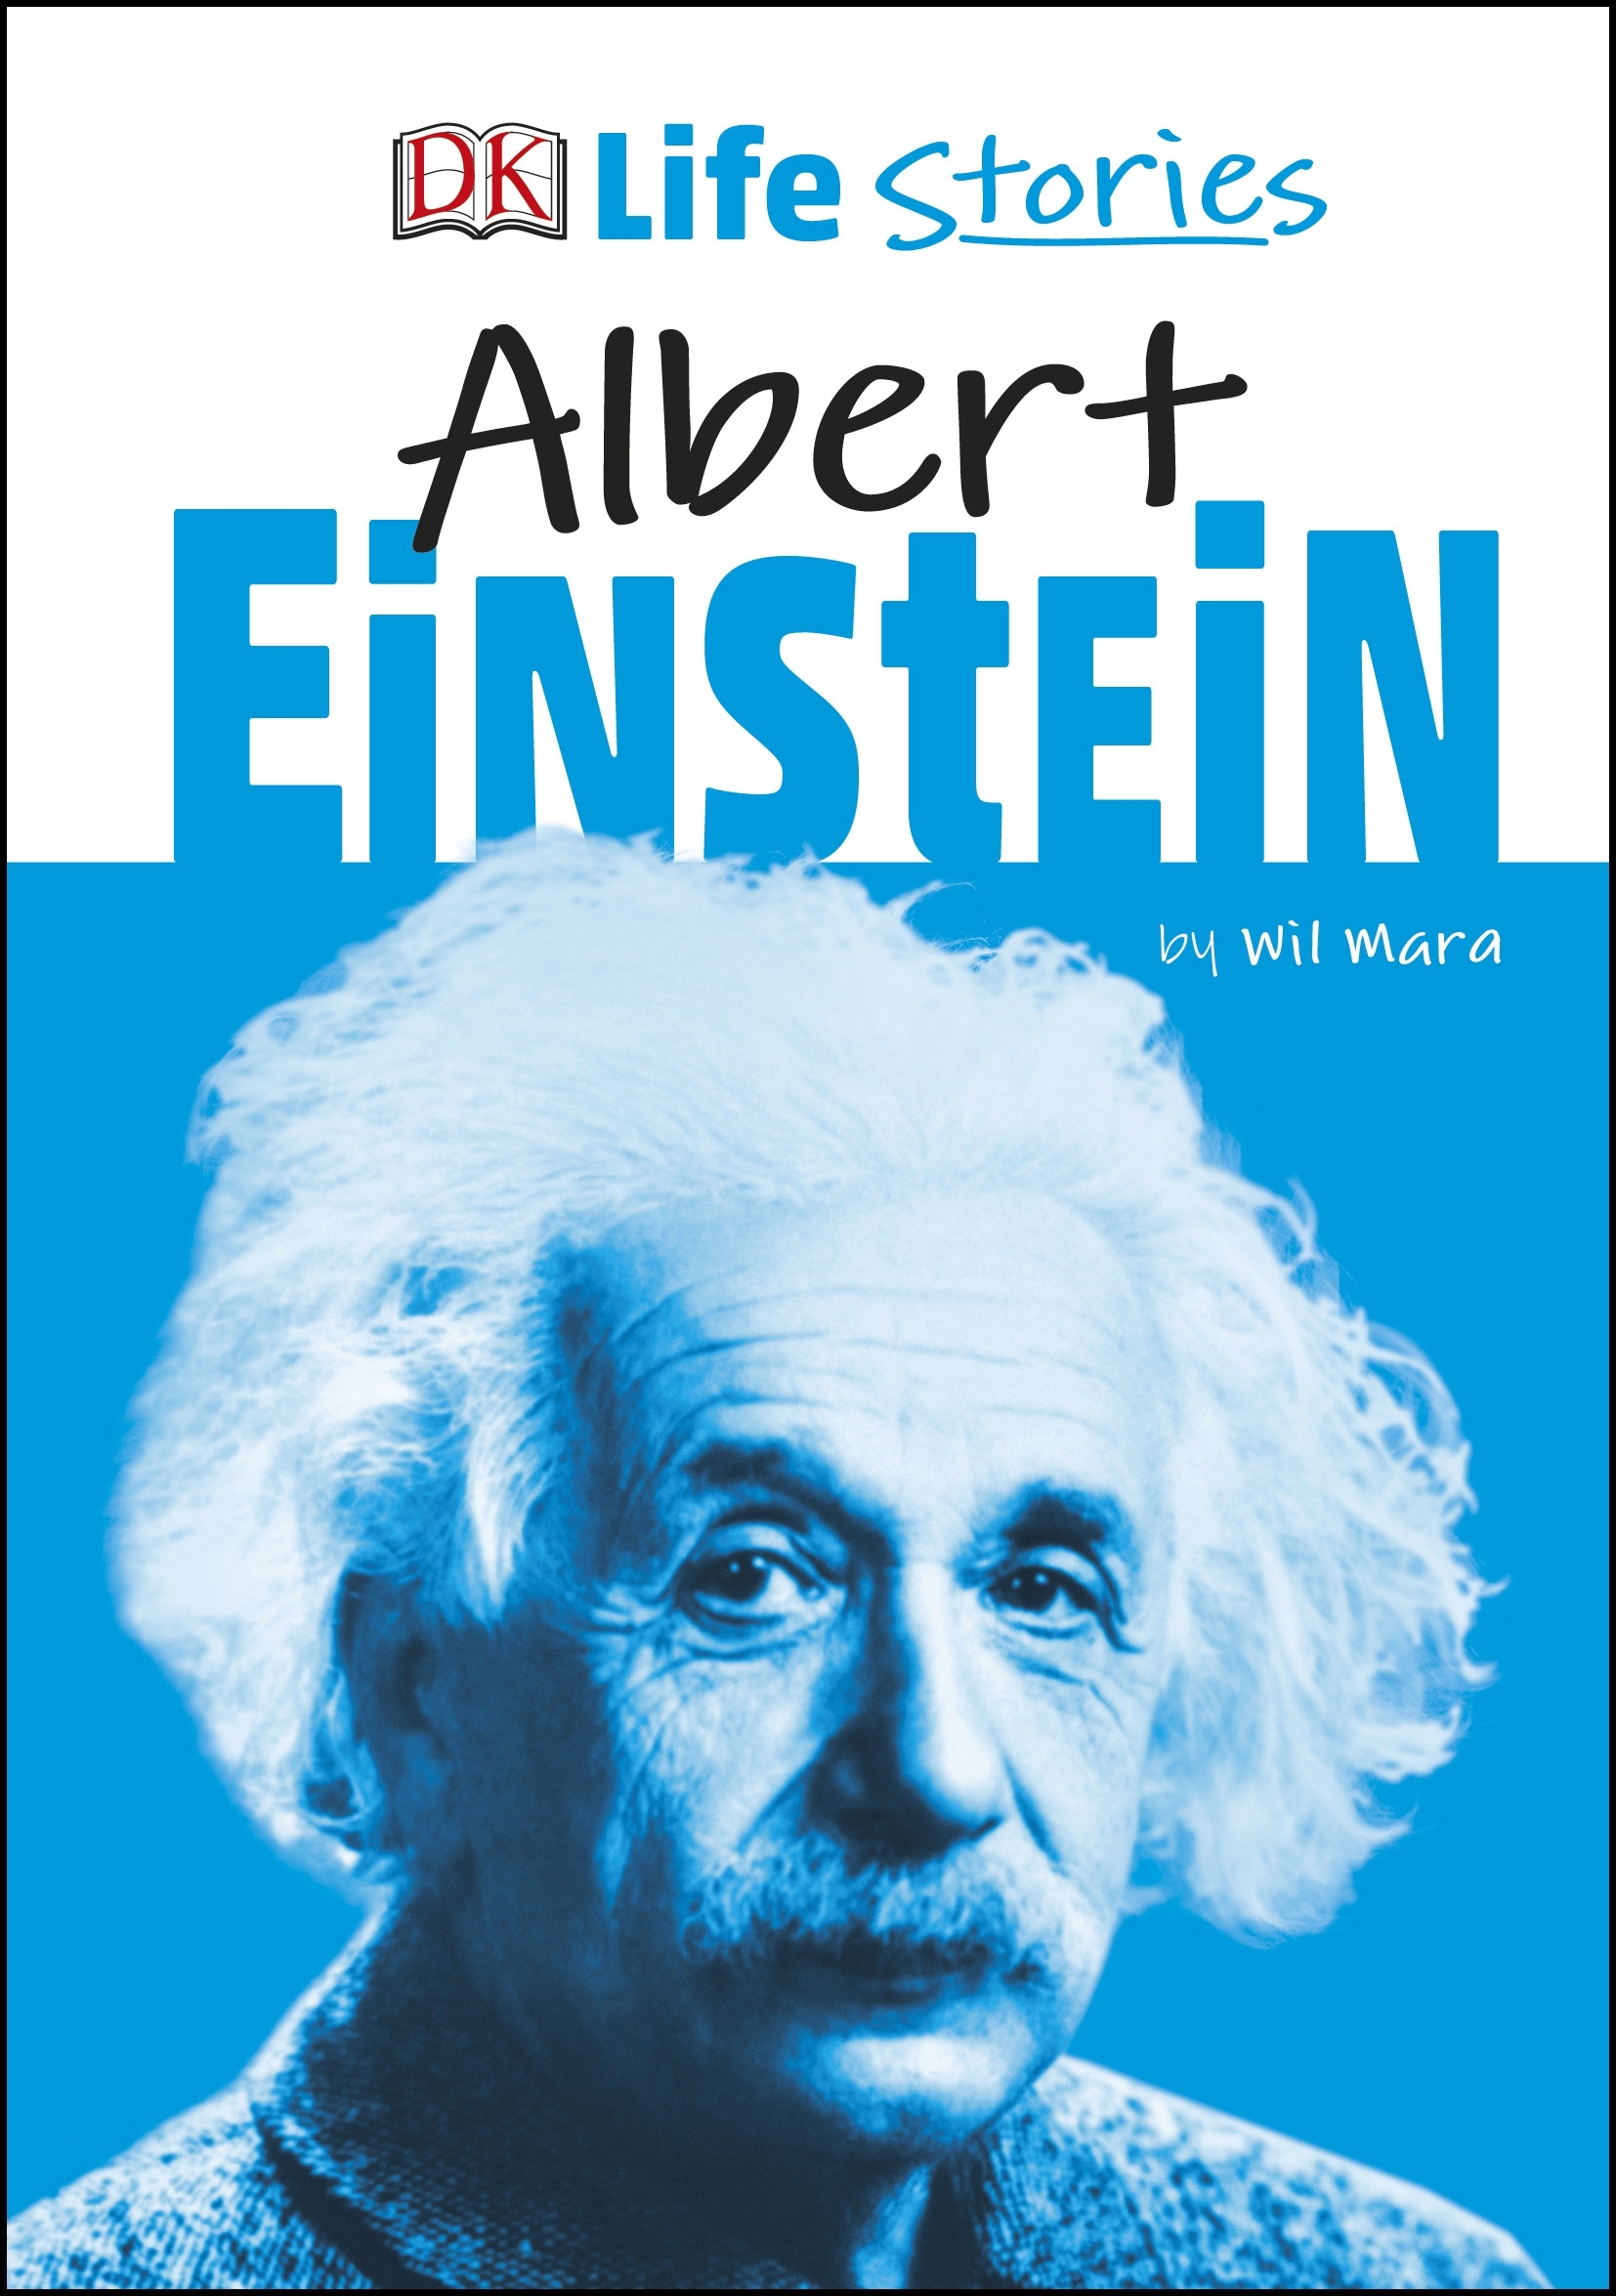 biography book about albert einstein